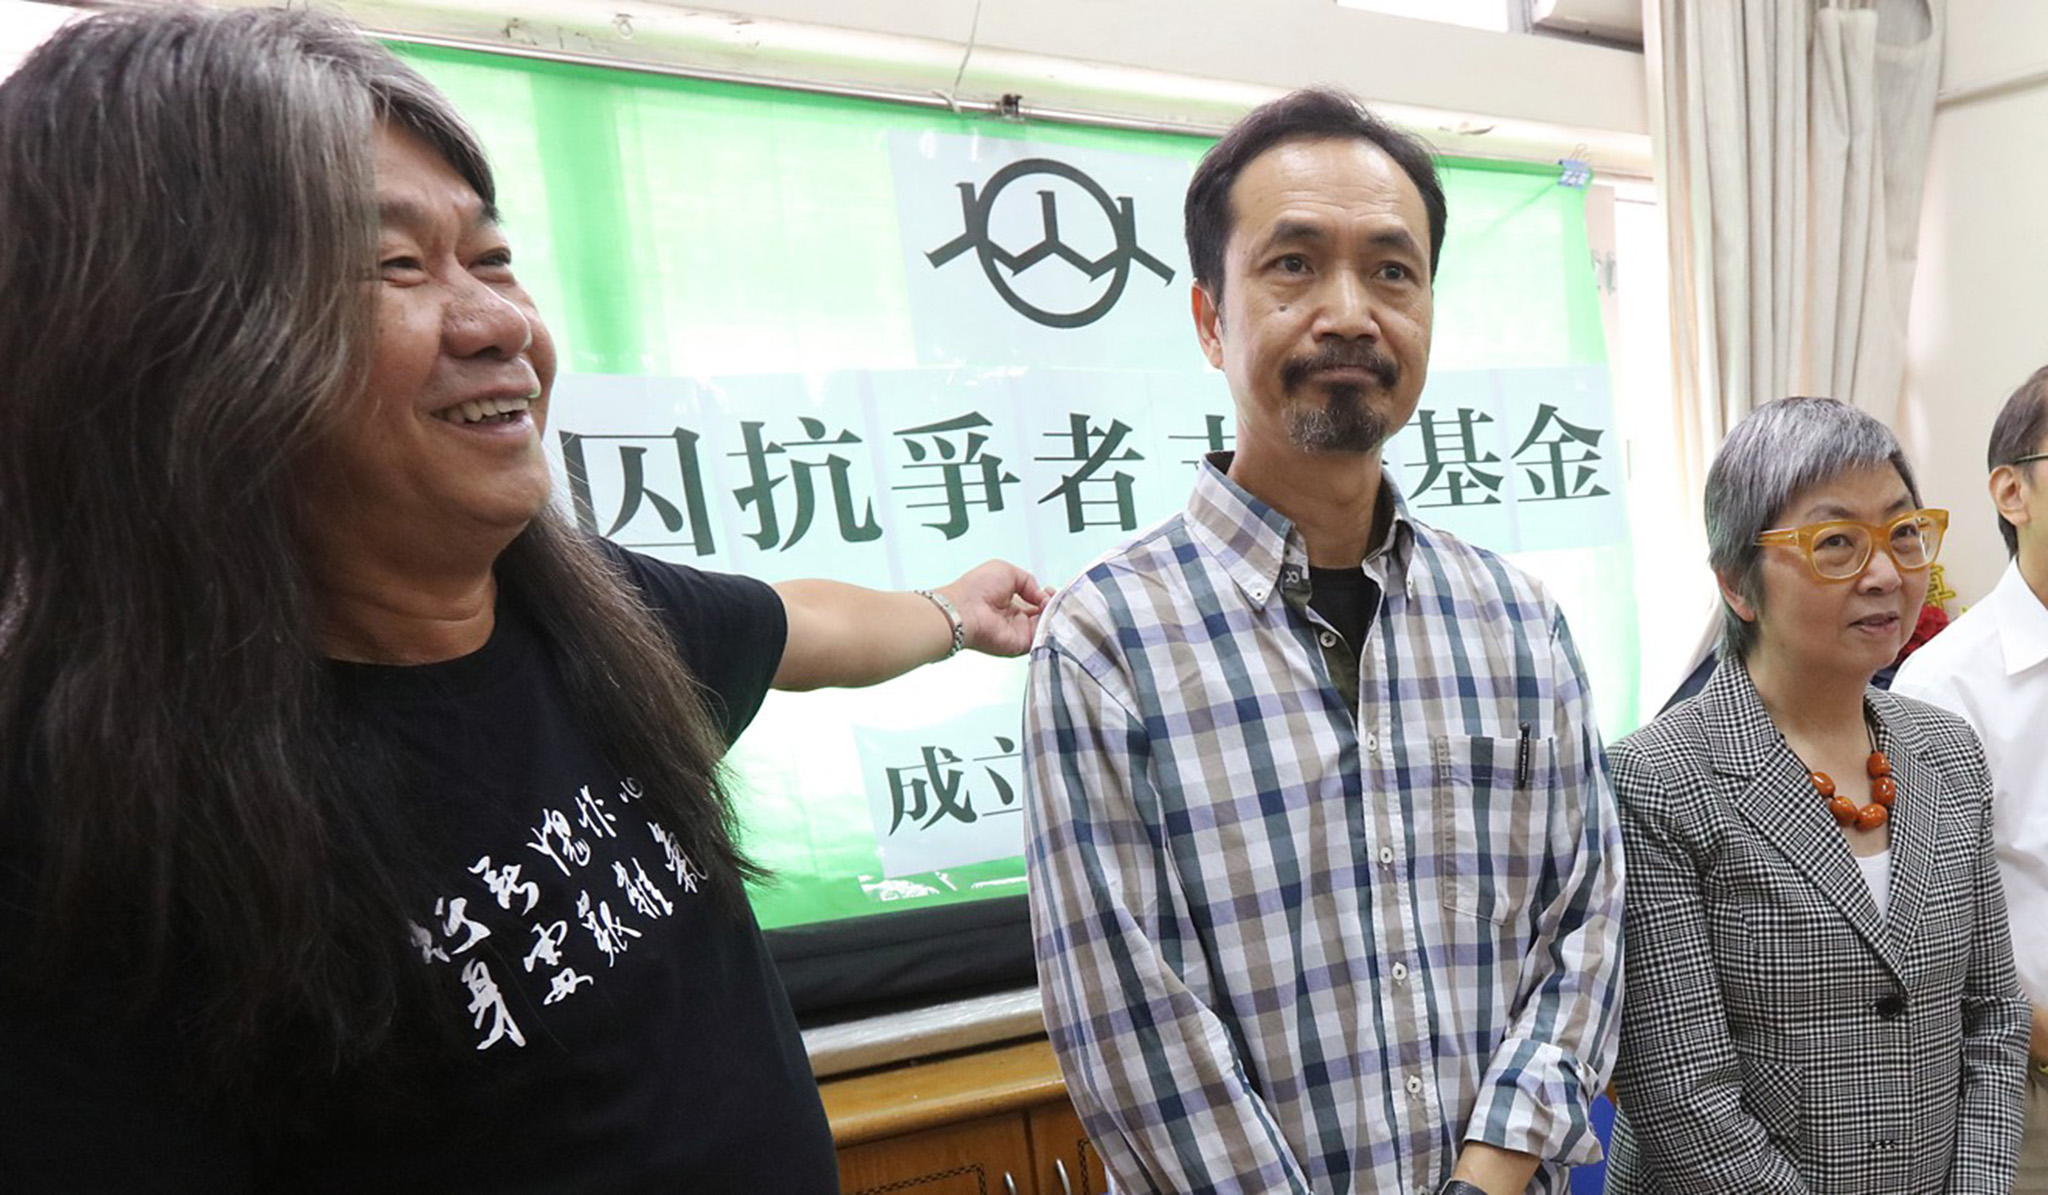 Hong Kong | Fundo para apoiar activistas presos